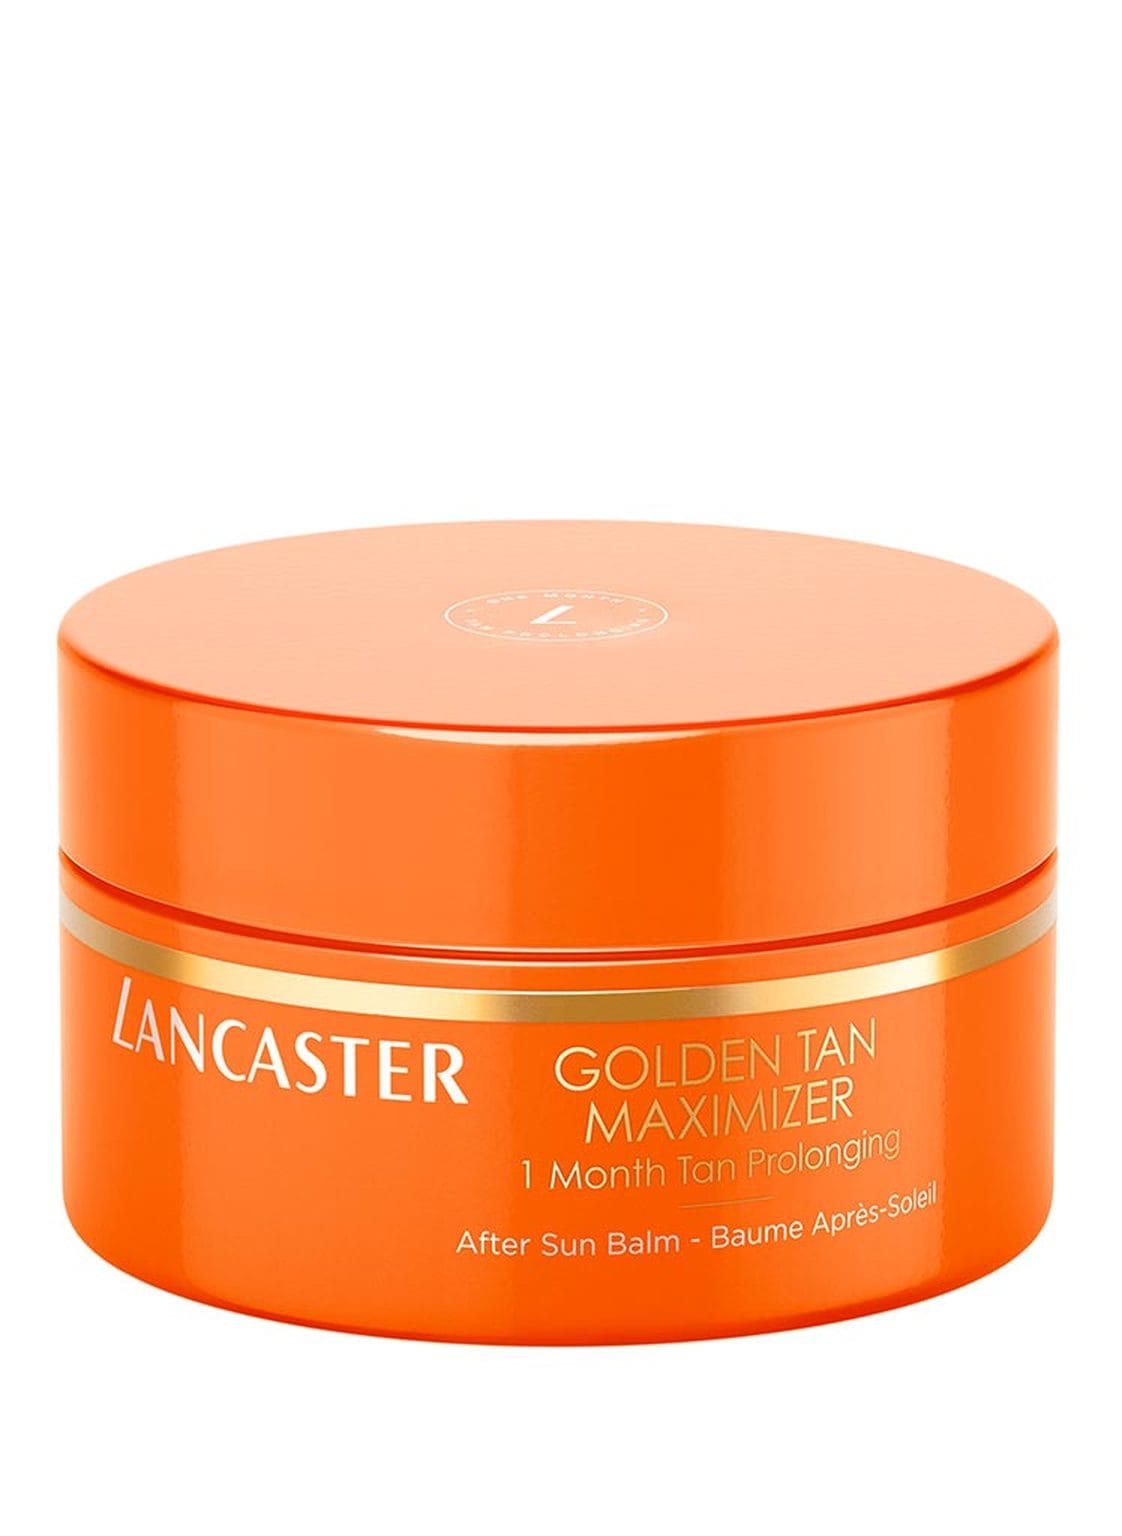 Image of Lancaster Golden Tan Maximizer After Sun Balm 200 ml